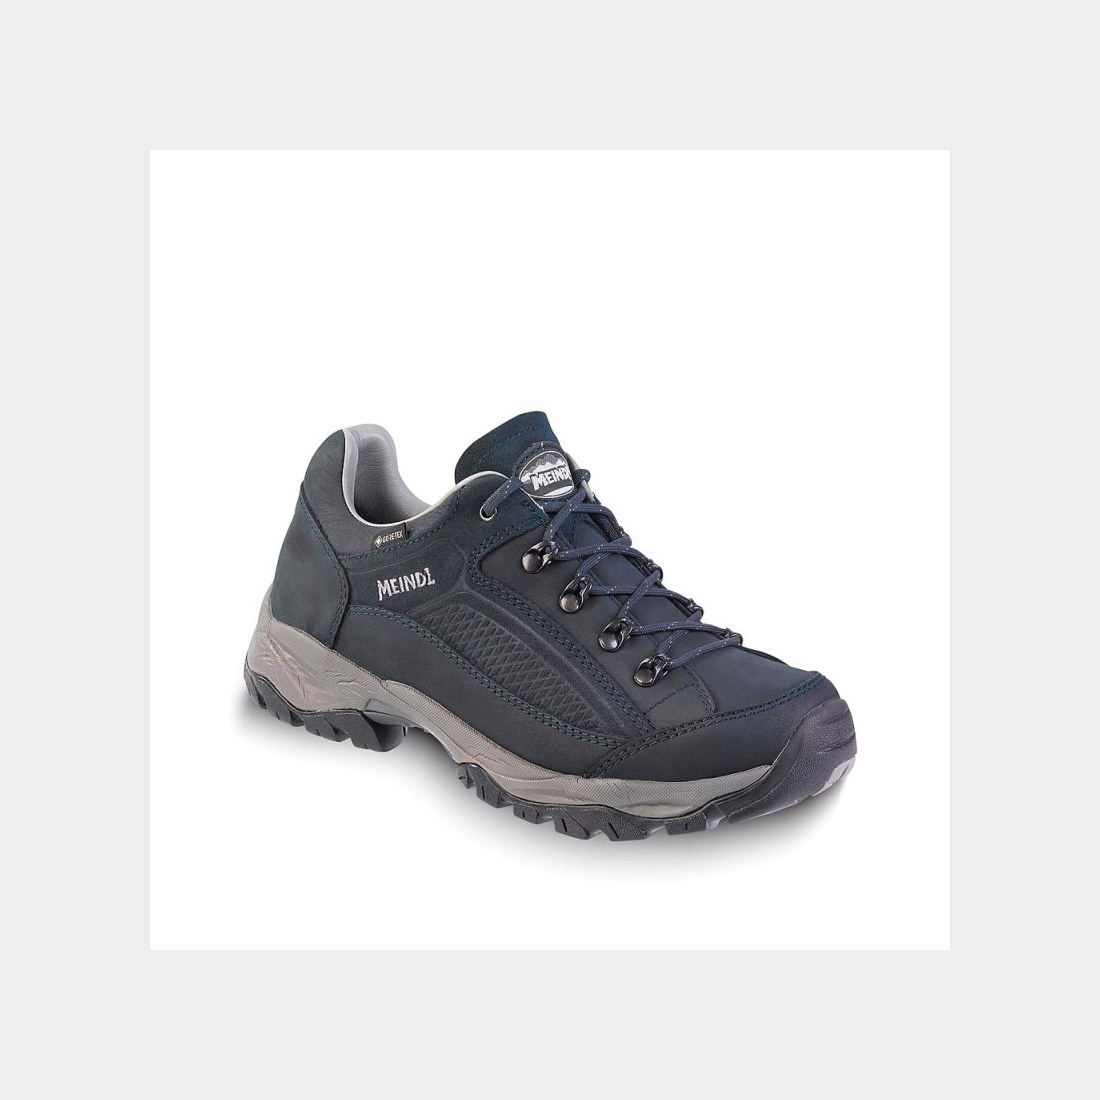 Meindl Damen Schuhe Atlanta GTX Nachtblau 7 UK - 41 EU